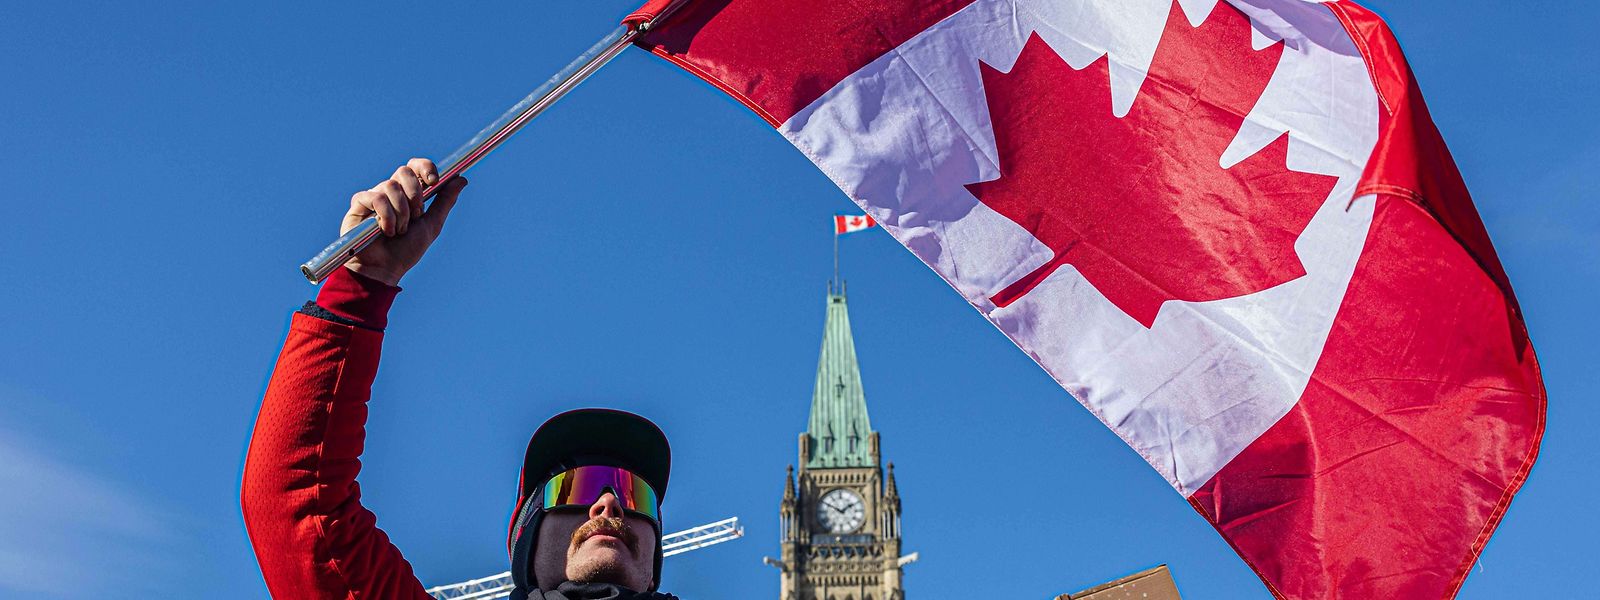 Der Protest vor dem Parlament in Ottawa richtet sich gegen die Corona-Politik der Regierung.